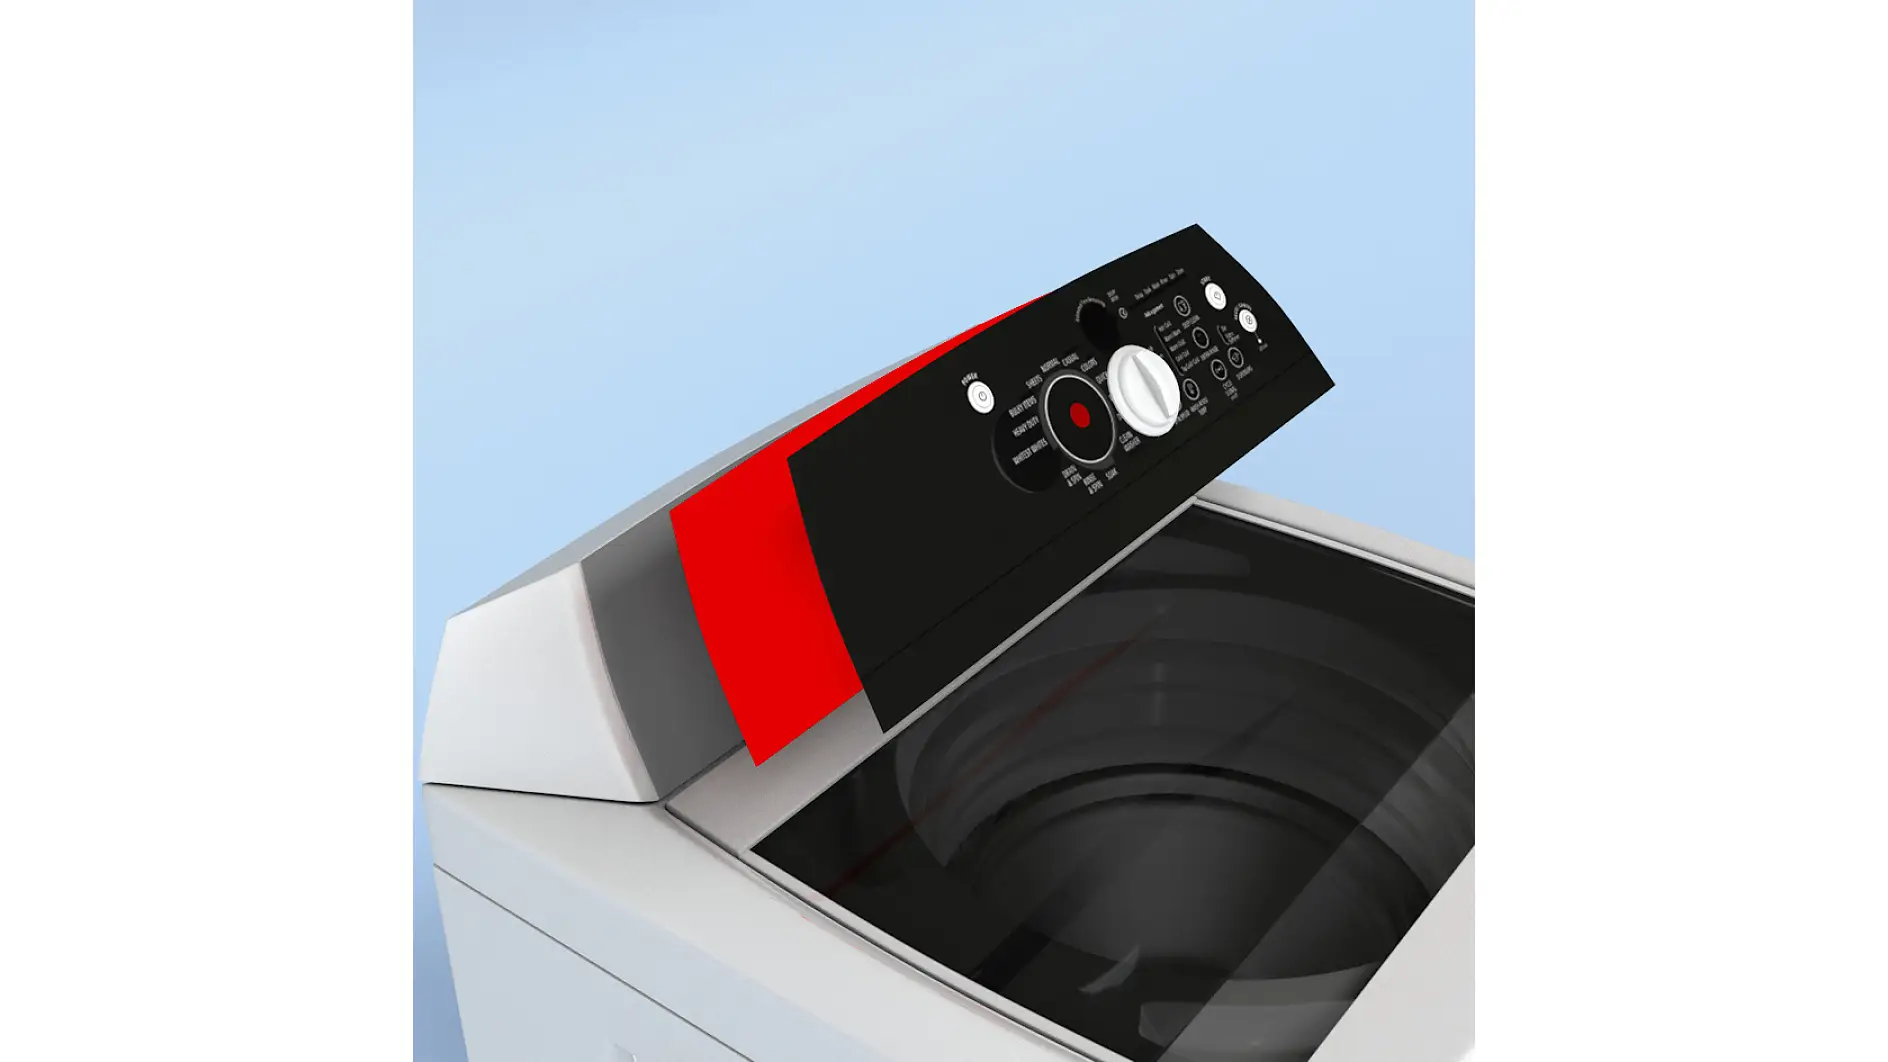 Membran anahtarlar çamaşır makinesine bir yapıştırıcı bant kullanılarak monte edilmektedir.